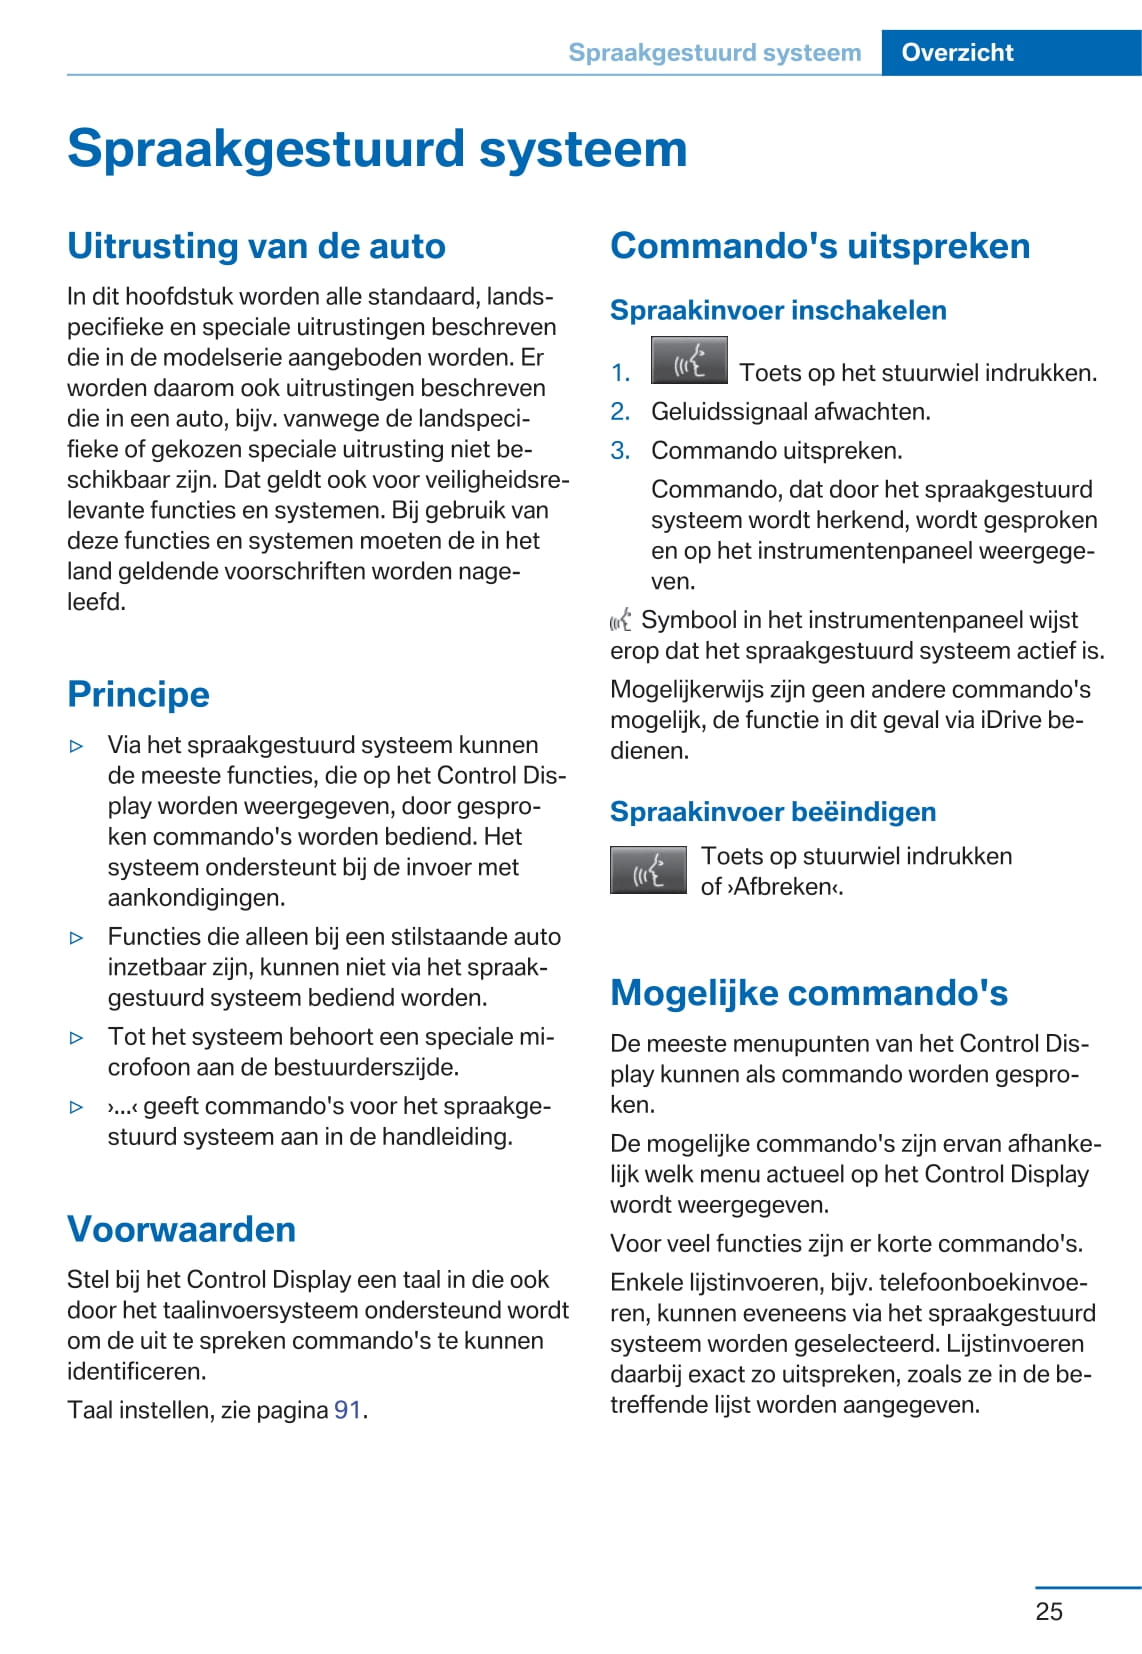 2015 BMW 2 Series Bedienungsanleitung | Niederländisch